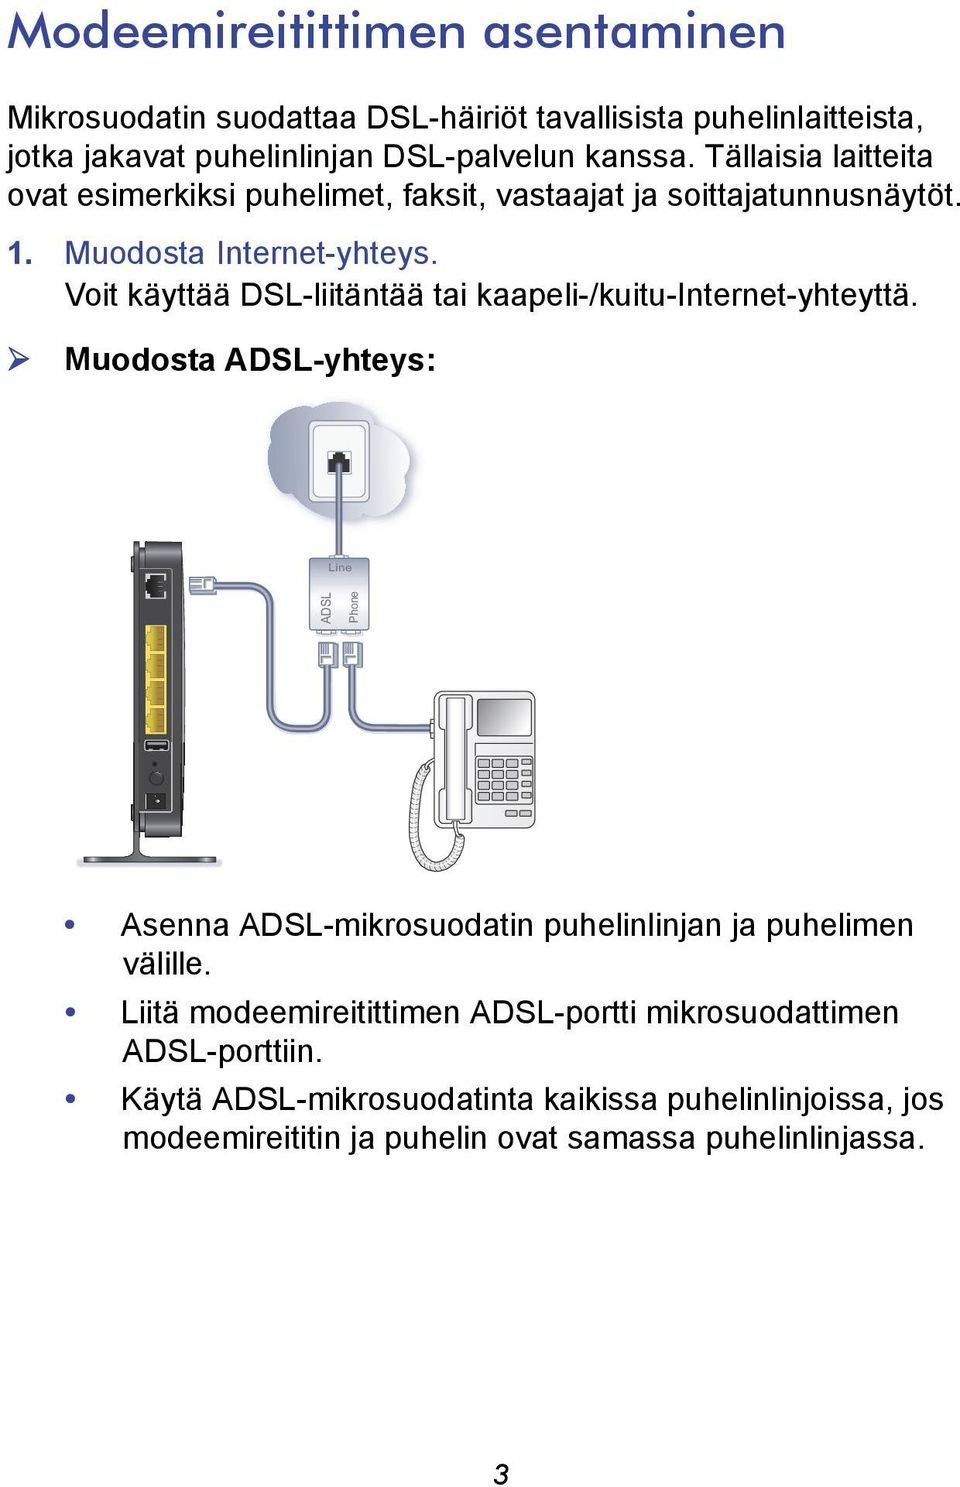 Voit käyttää DSL-liitäntää tai kaapeli-/kuitu-internet-yhteyttä.